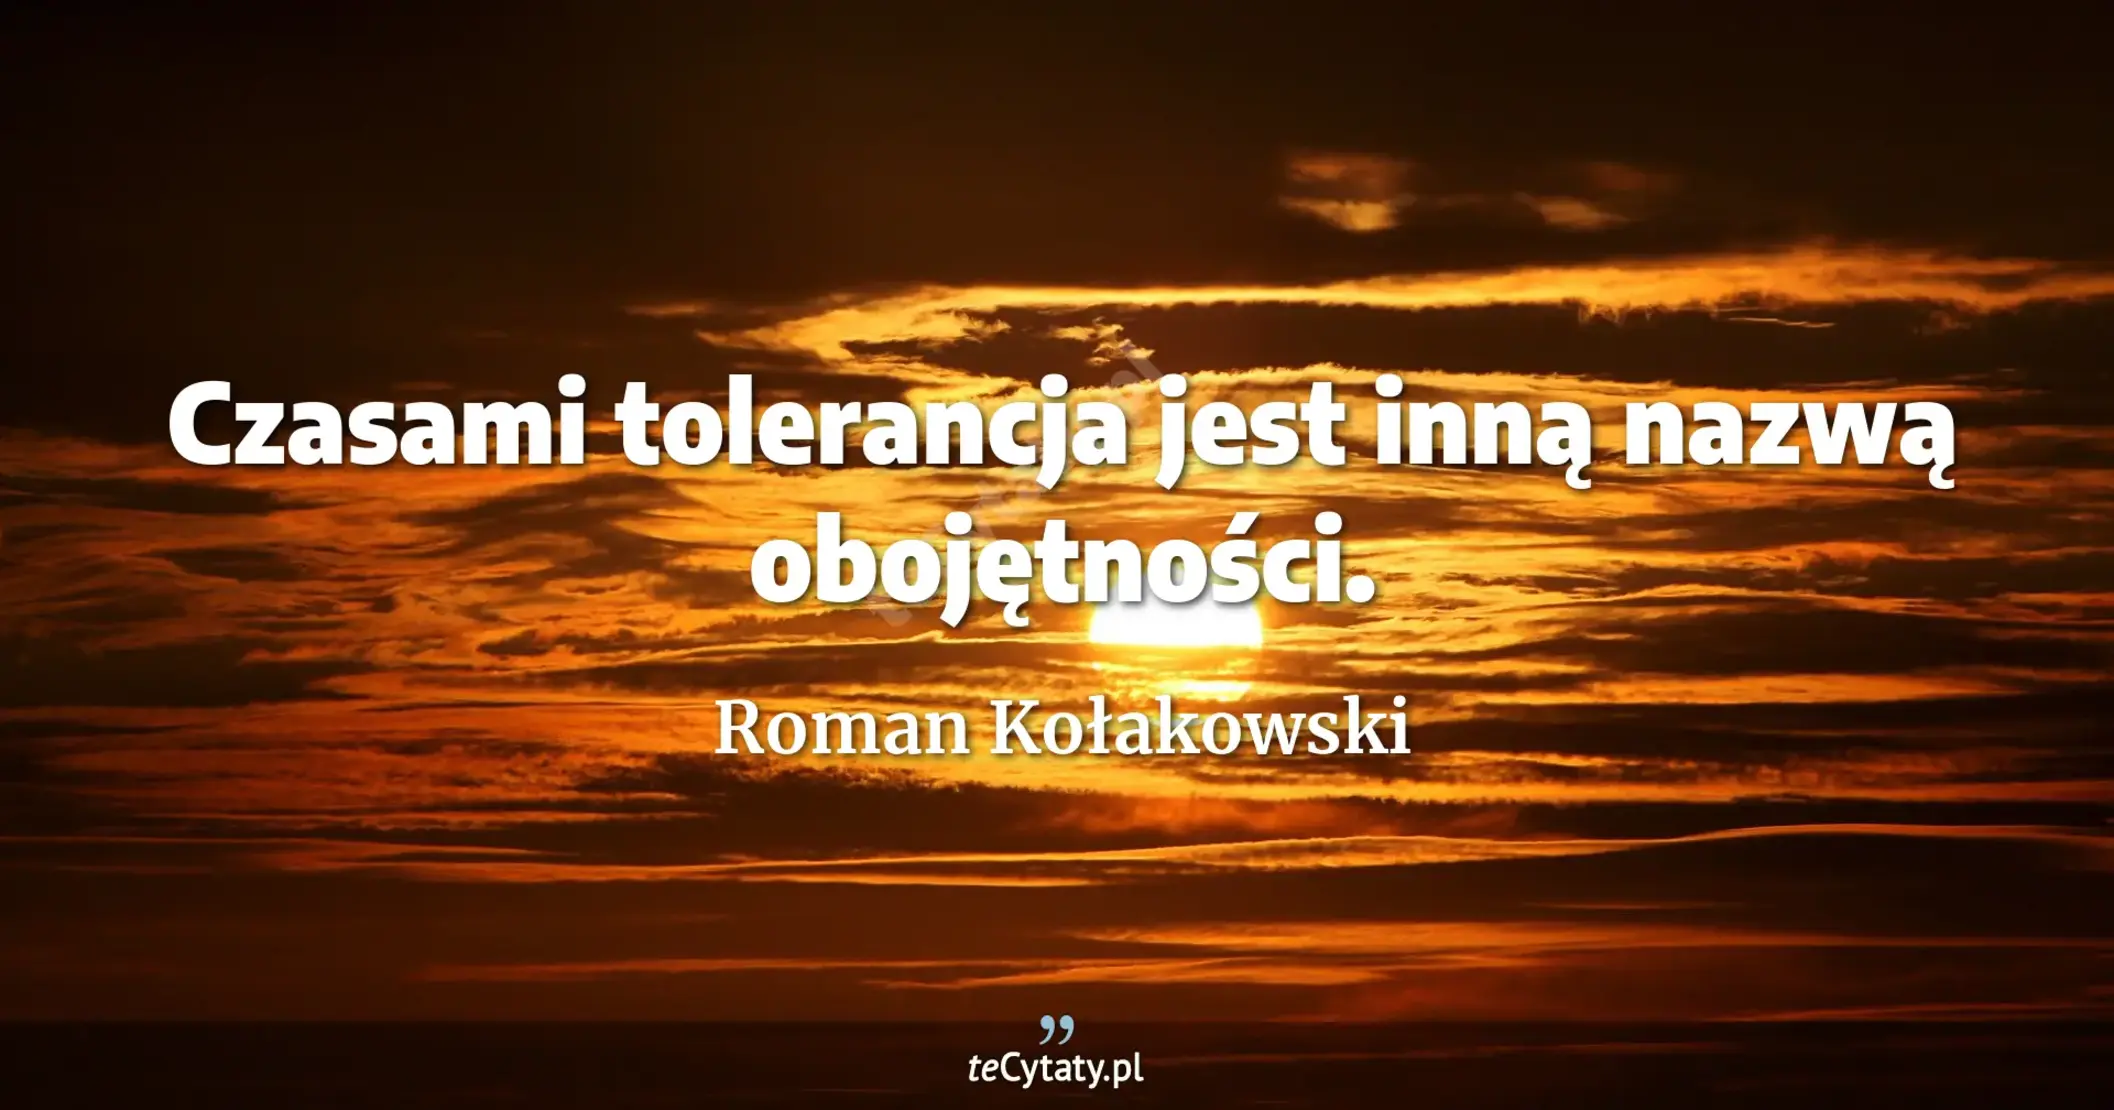 Czasami tolerancja jest inną nazwą obojętności. - Roman Kołakowski